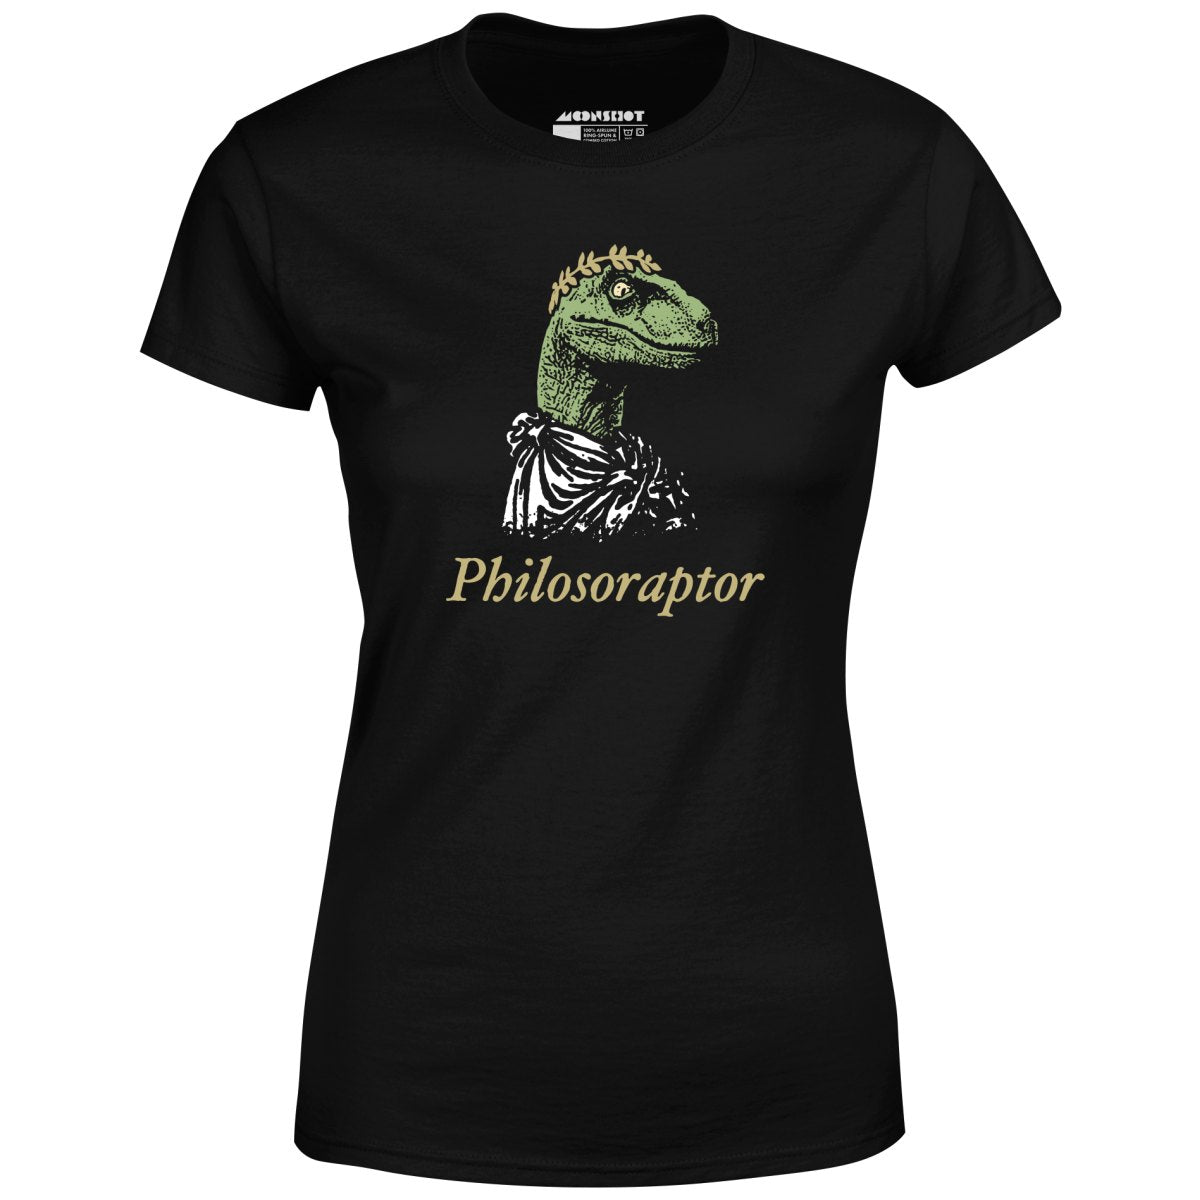 Philosoraptor - Women's T-Shirt